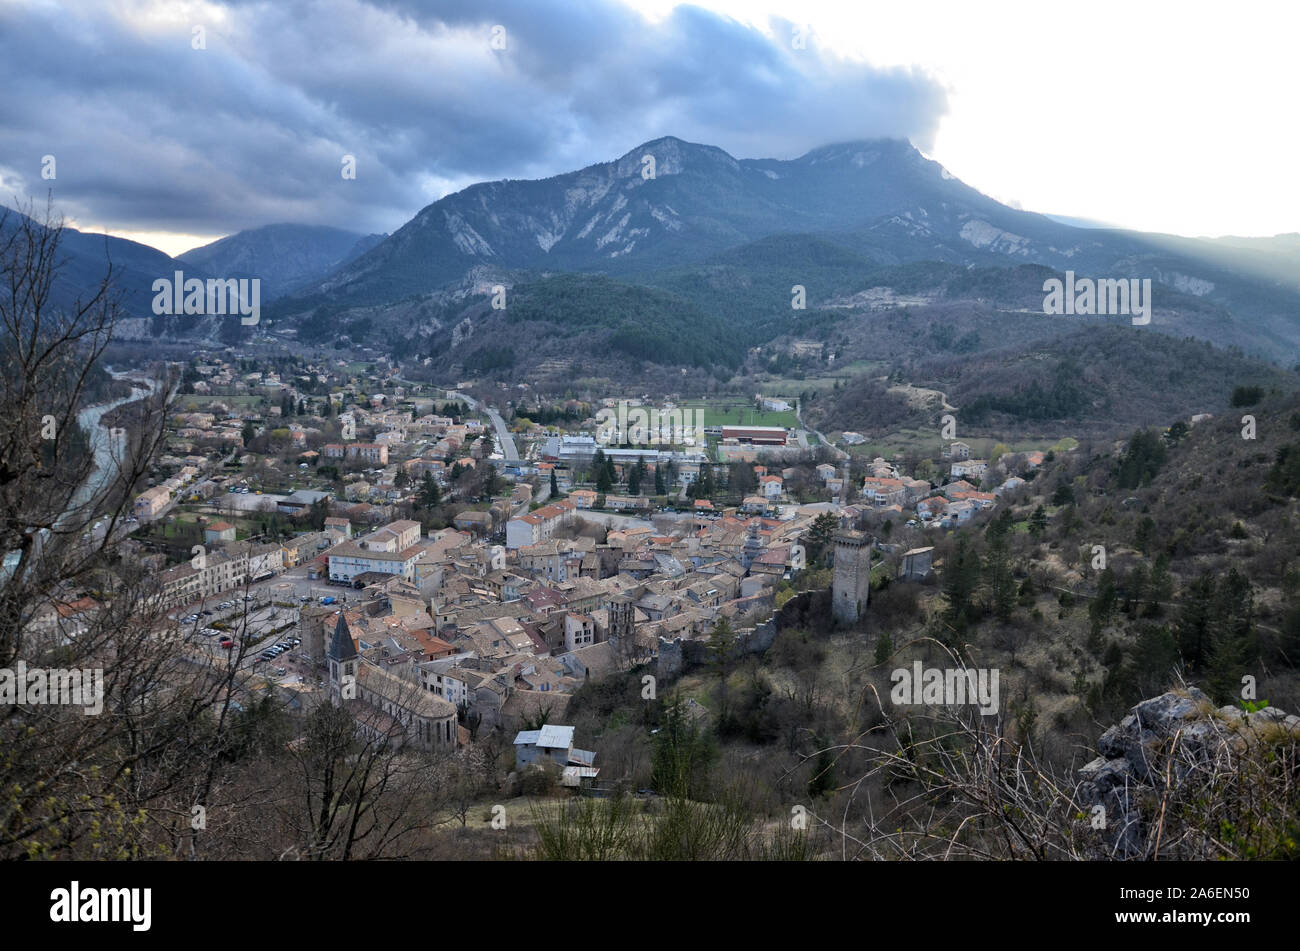 Village de Castellanne dans le sud de la France Alpes de Haute Provence Banque D'Images